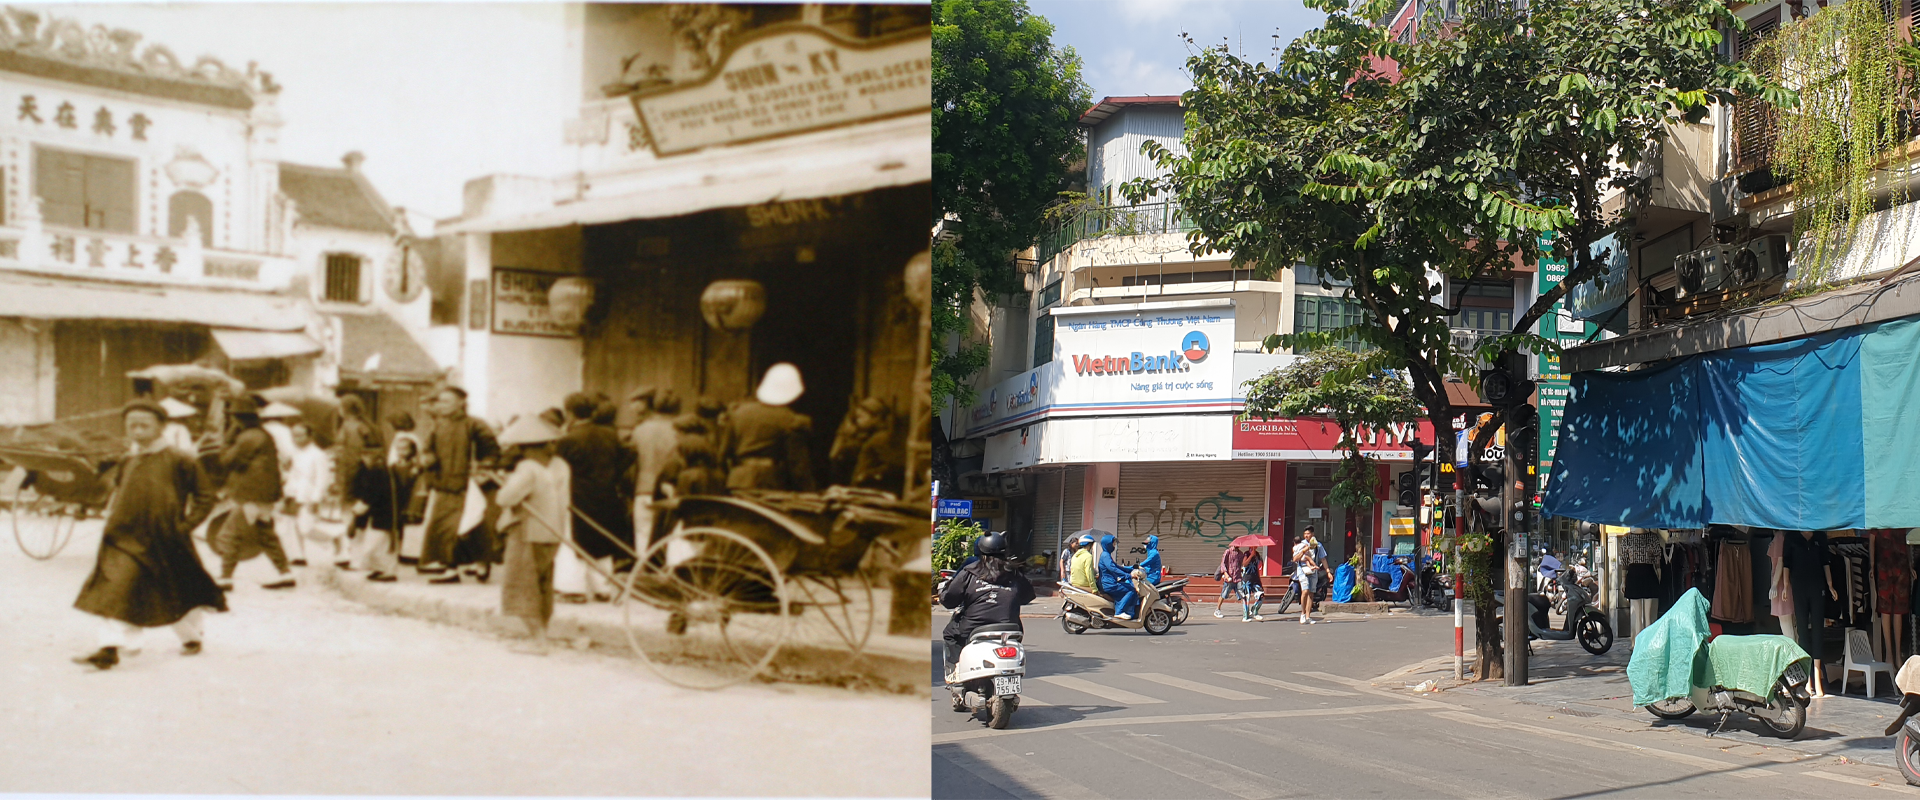 Những hình ảnh thú vị về sự đổi thay của Hà Nội sau 100 năm - Ảnh 3.